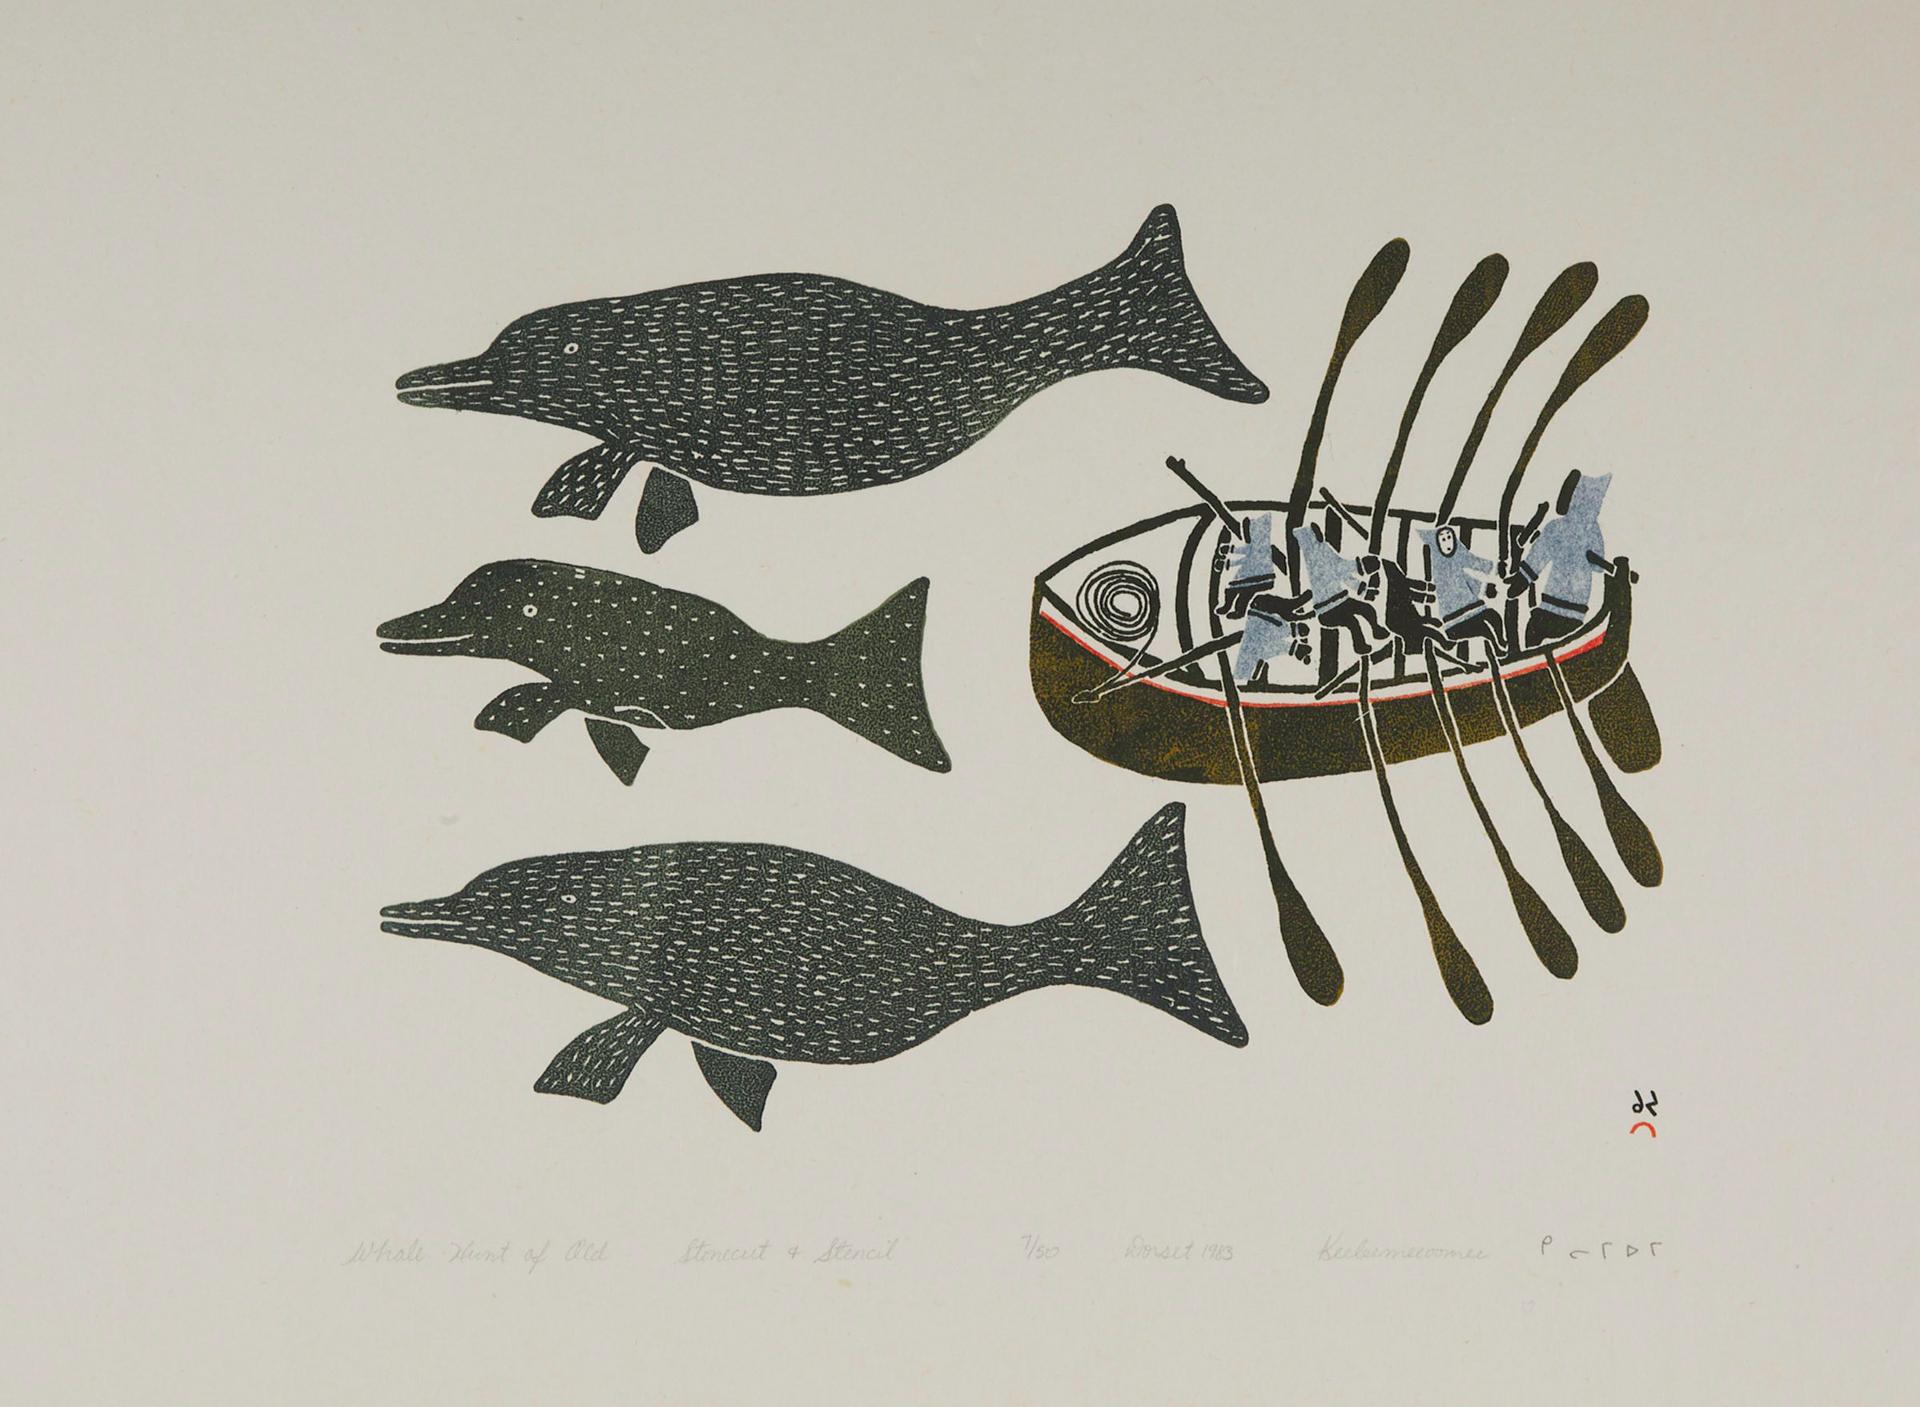 Keeleemeeoomee Samualie (1919-1983) - Whale Hunt Of Old, 1983